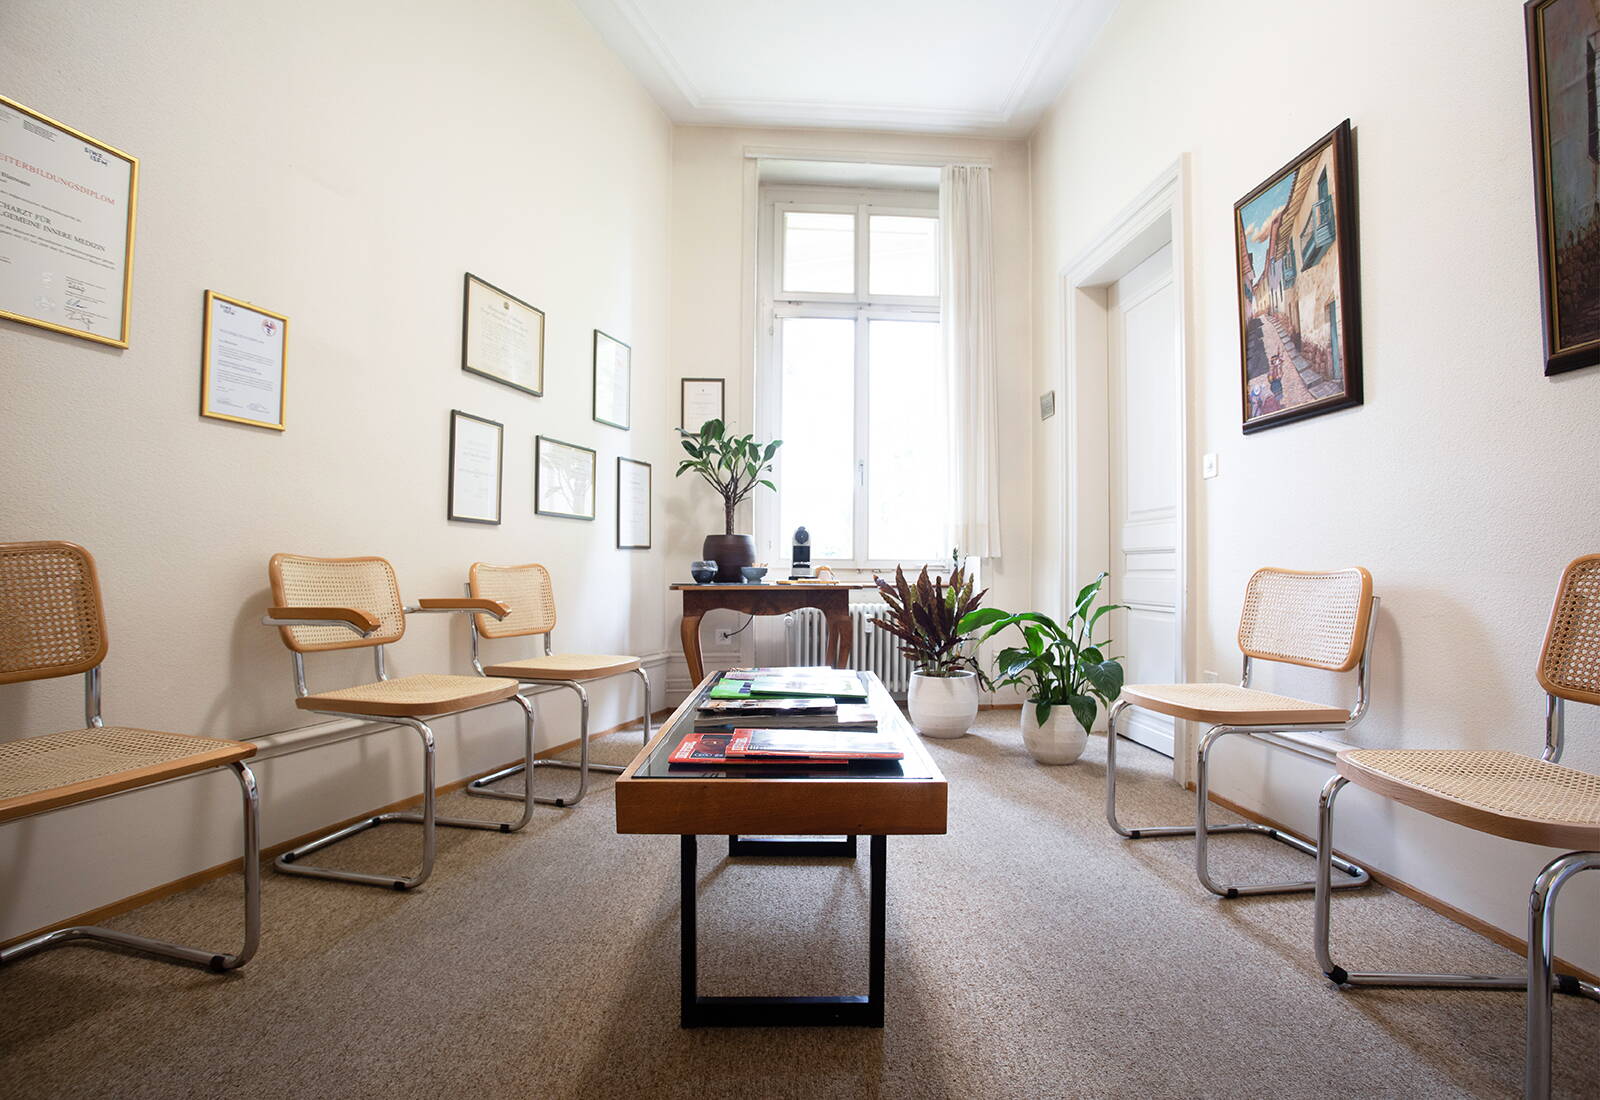 Sevogelpraxis | Ihr Hausarzt im Gellert-Quartier |  Basel